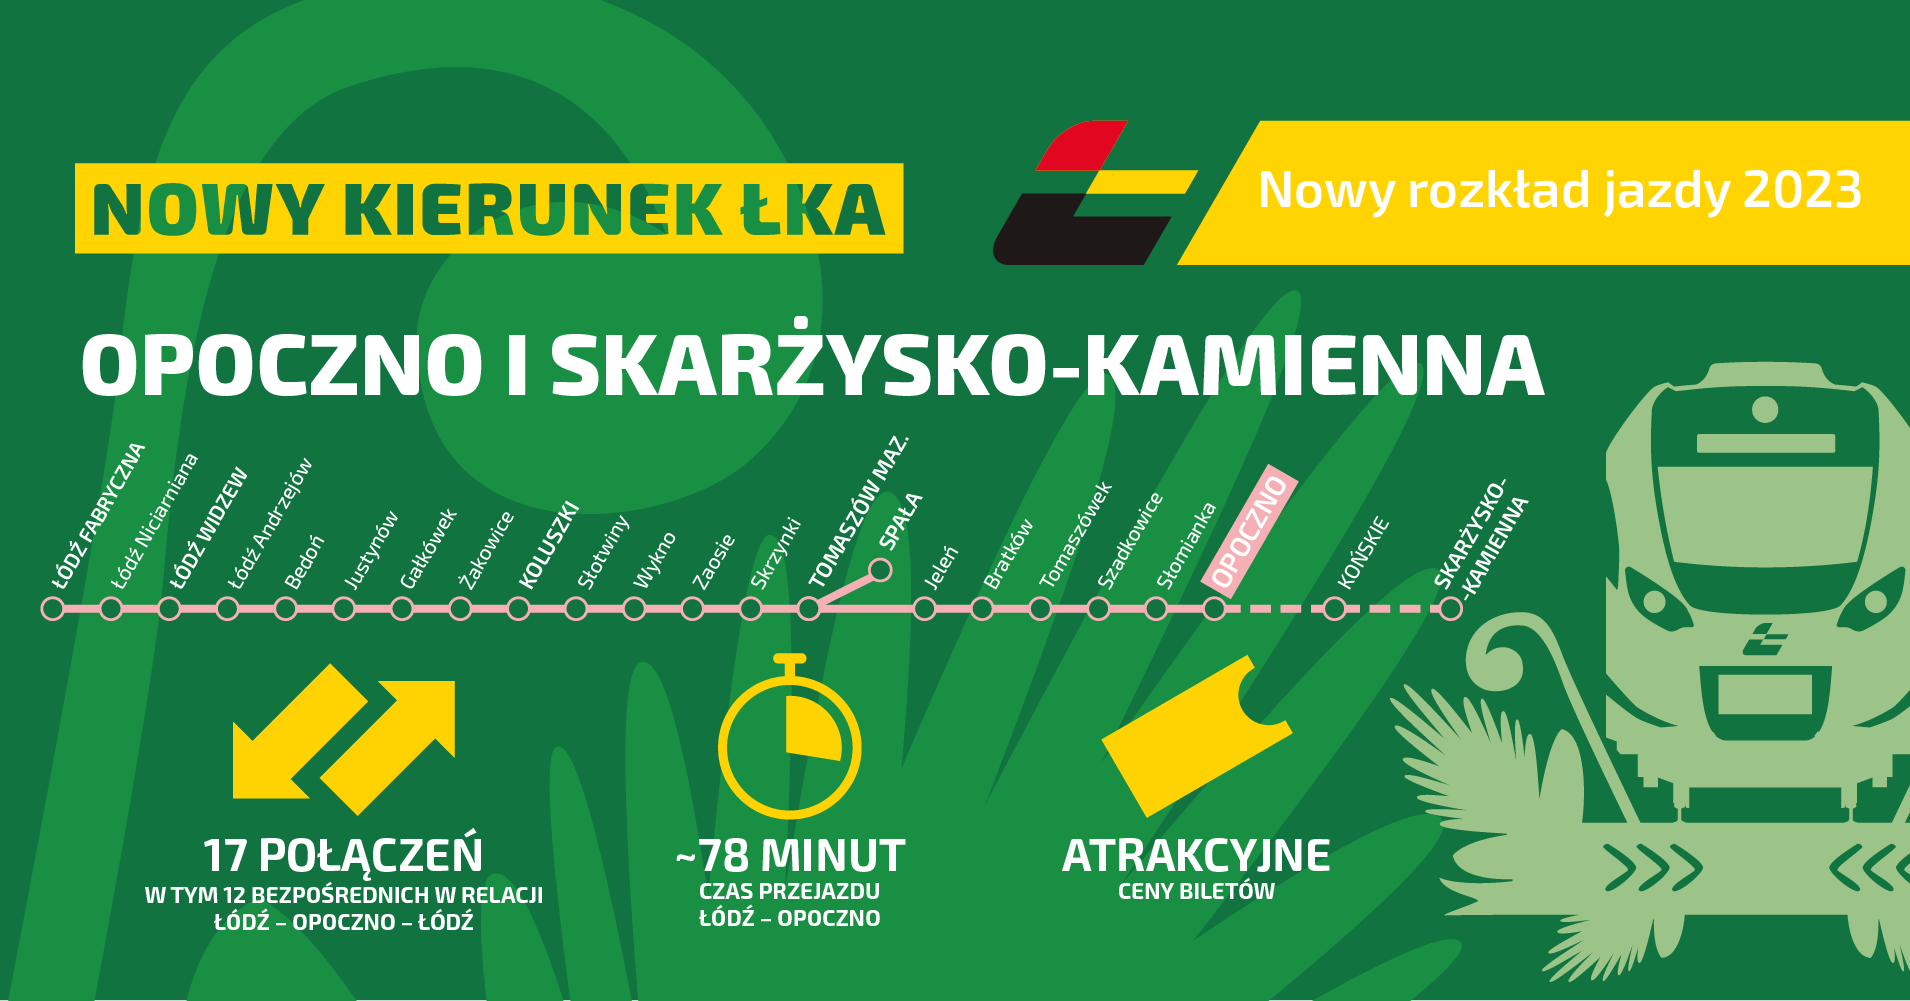 Grafika informuje o nowych połączeniach ŁKA do Opoczna i Skaryżsko-Kamiennej. 17 połączeń, ok. 78 minut czasu przejazdu i atrakcyjne ceny biletów. 